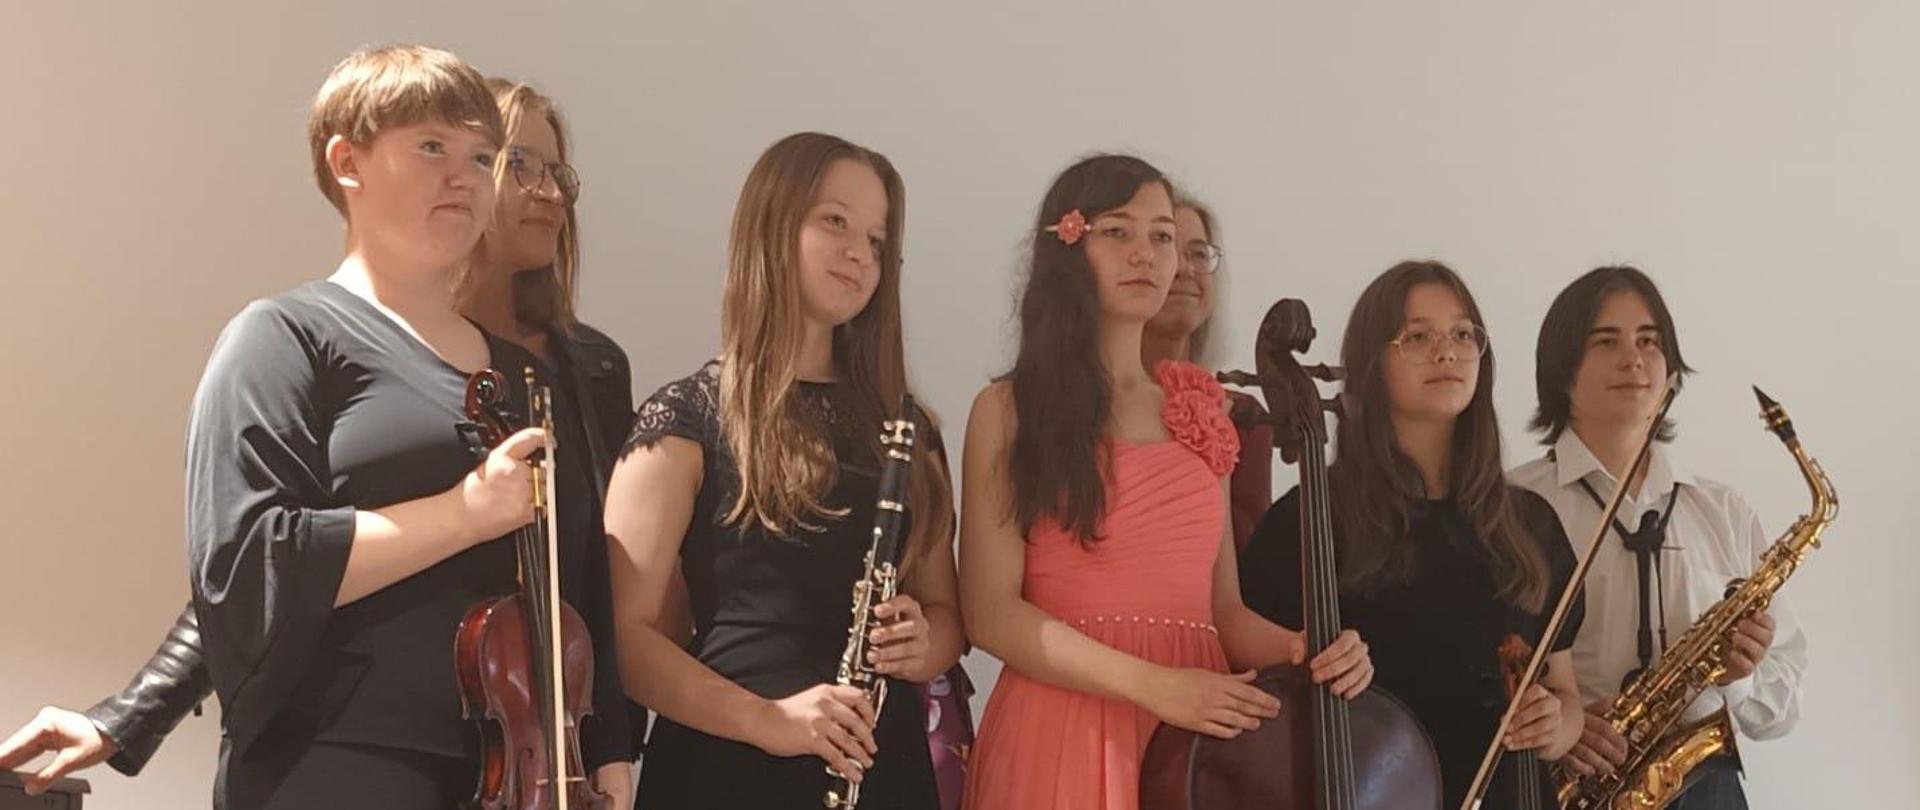 Na zdjęciu widać uczniów którzy stoją i trzymają instrumenty w rękach od lewej skrzypce klarnet wiolonczela skrzypce oraz saksofon. W tle widoczna żółta ściana